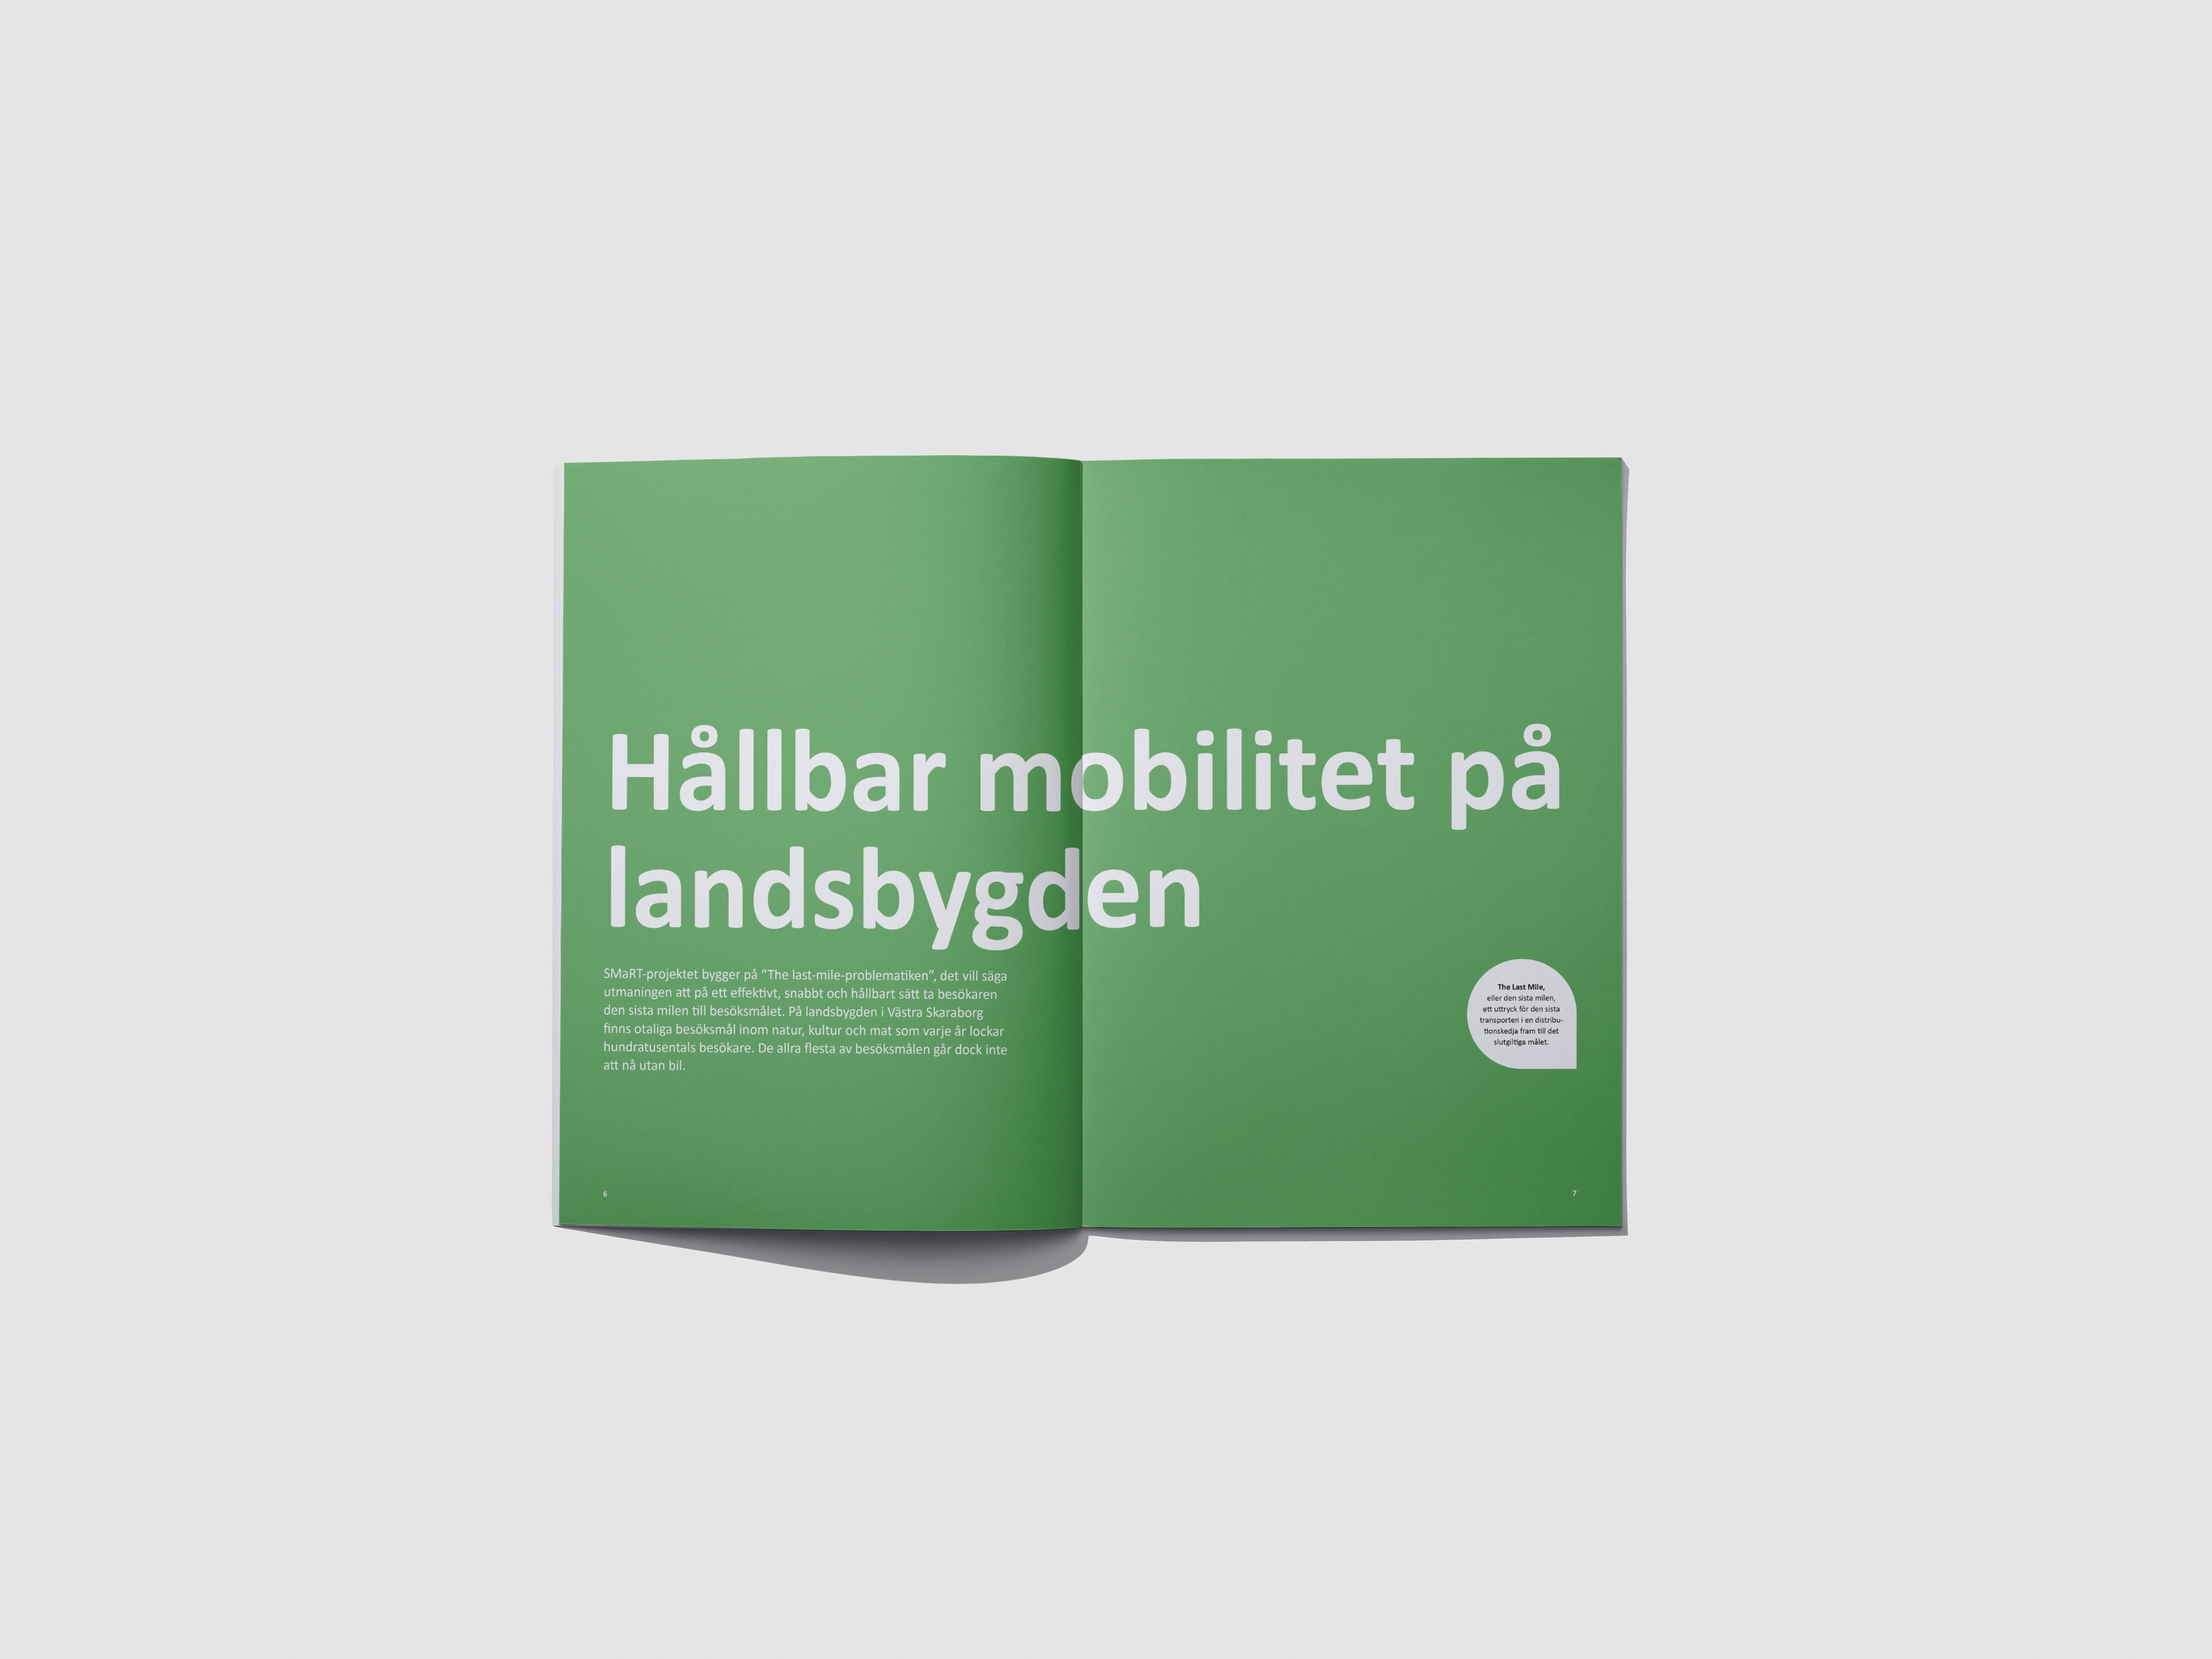 Spread from the report showing the title 'Hållbar mobilitet för landsbygden'